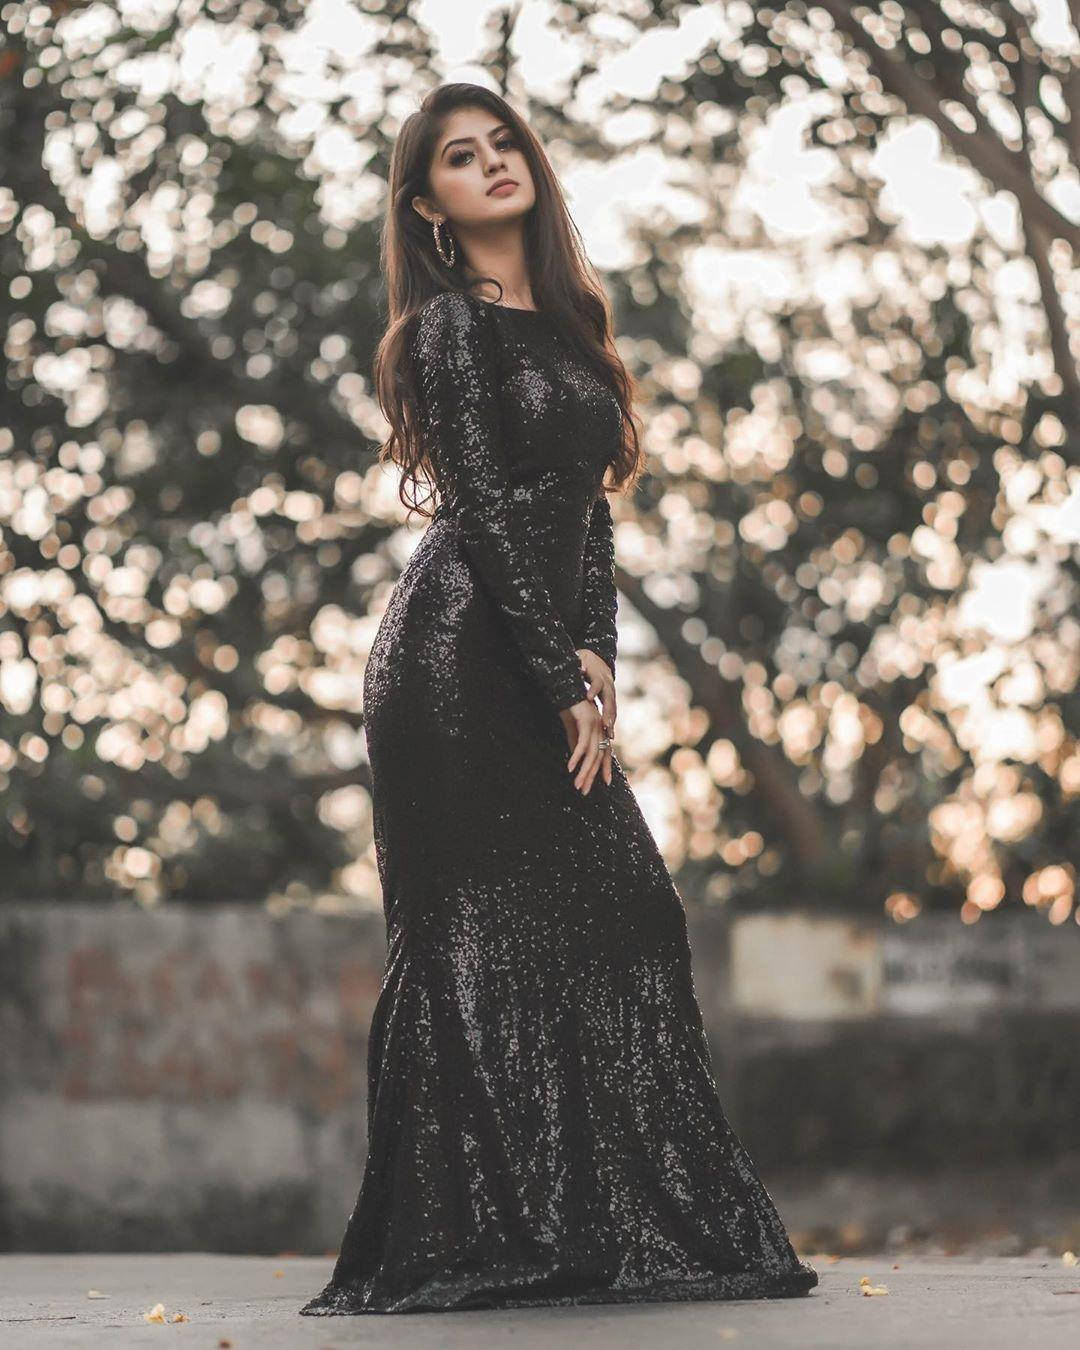 Long Black Dress Arishfa Khan Wallpaper